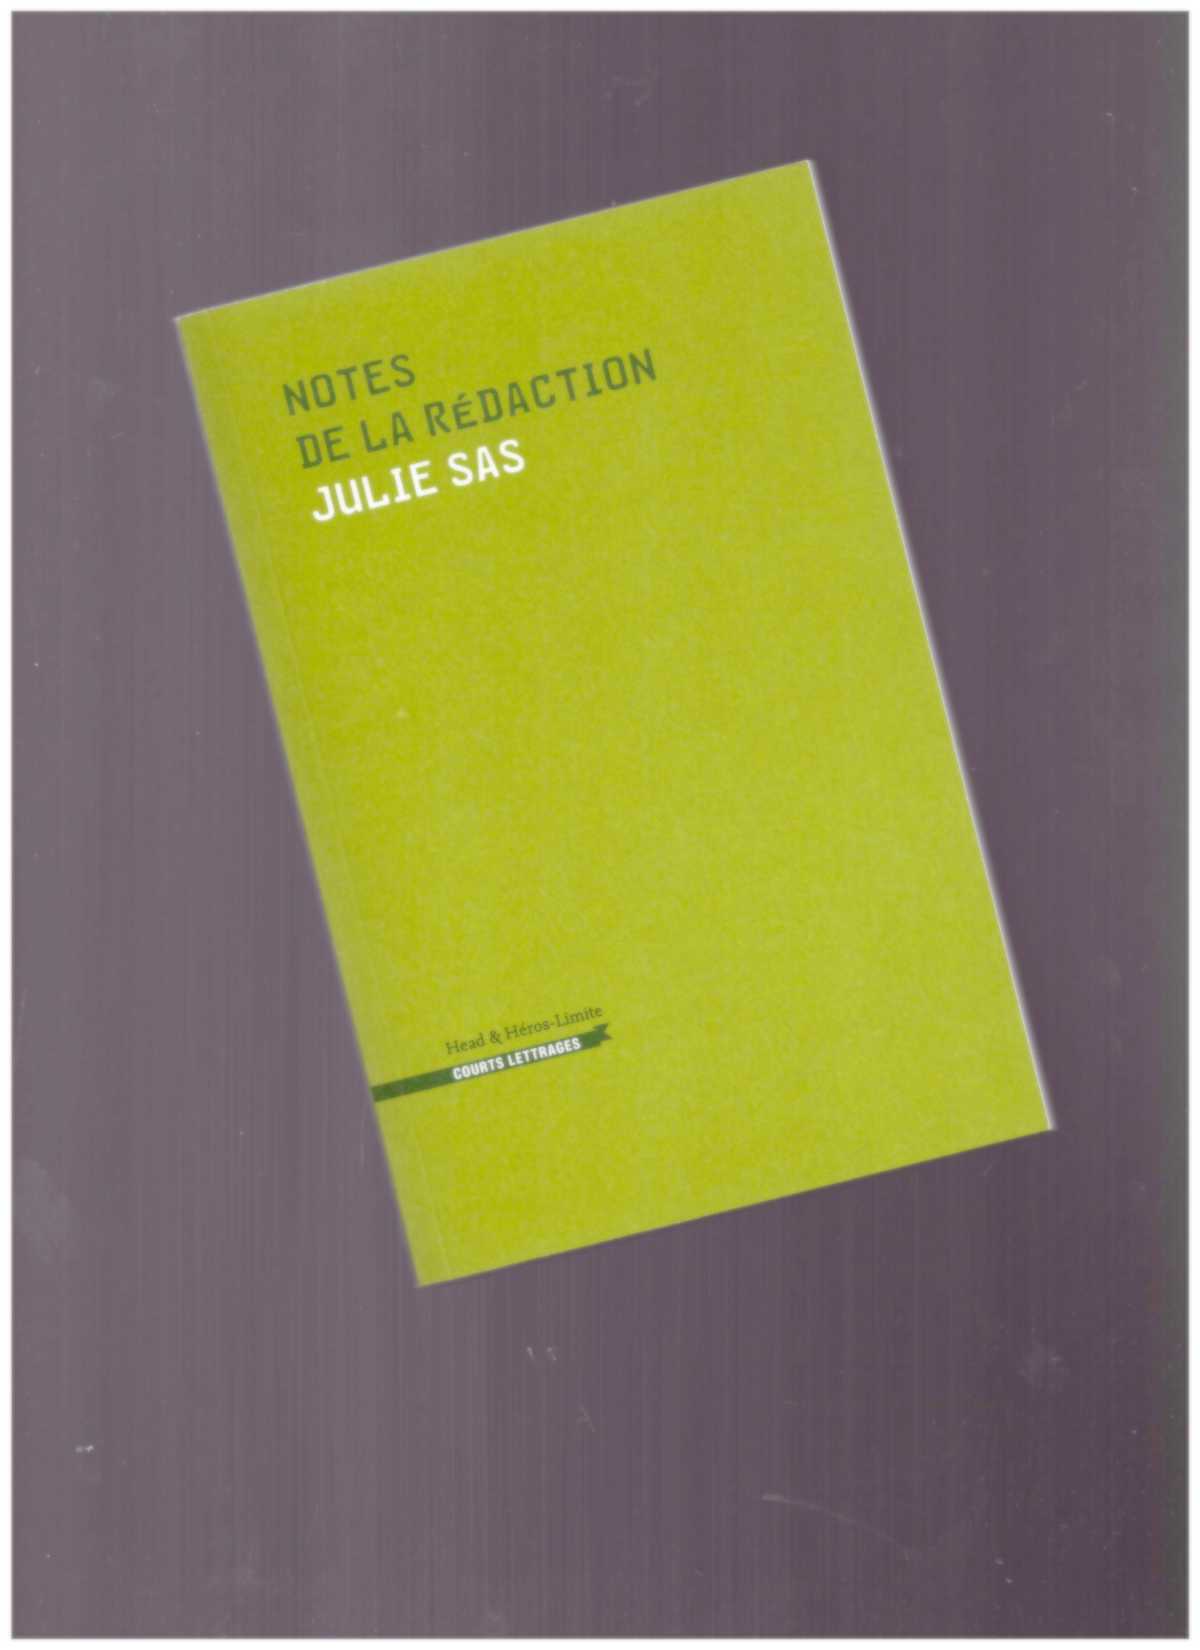 SAS, Julie - Notes de la rédaction